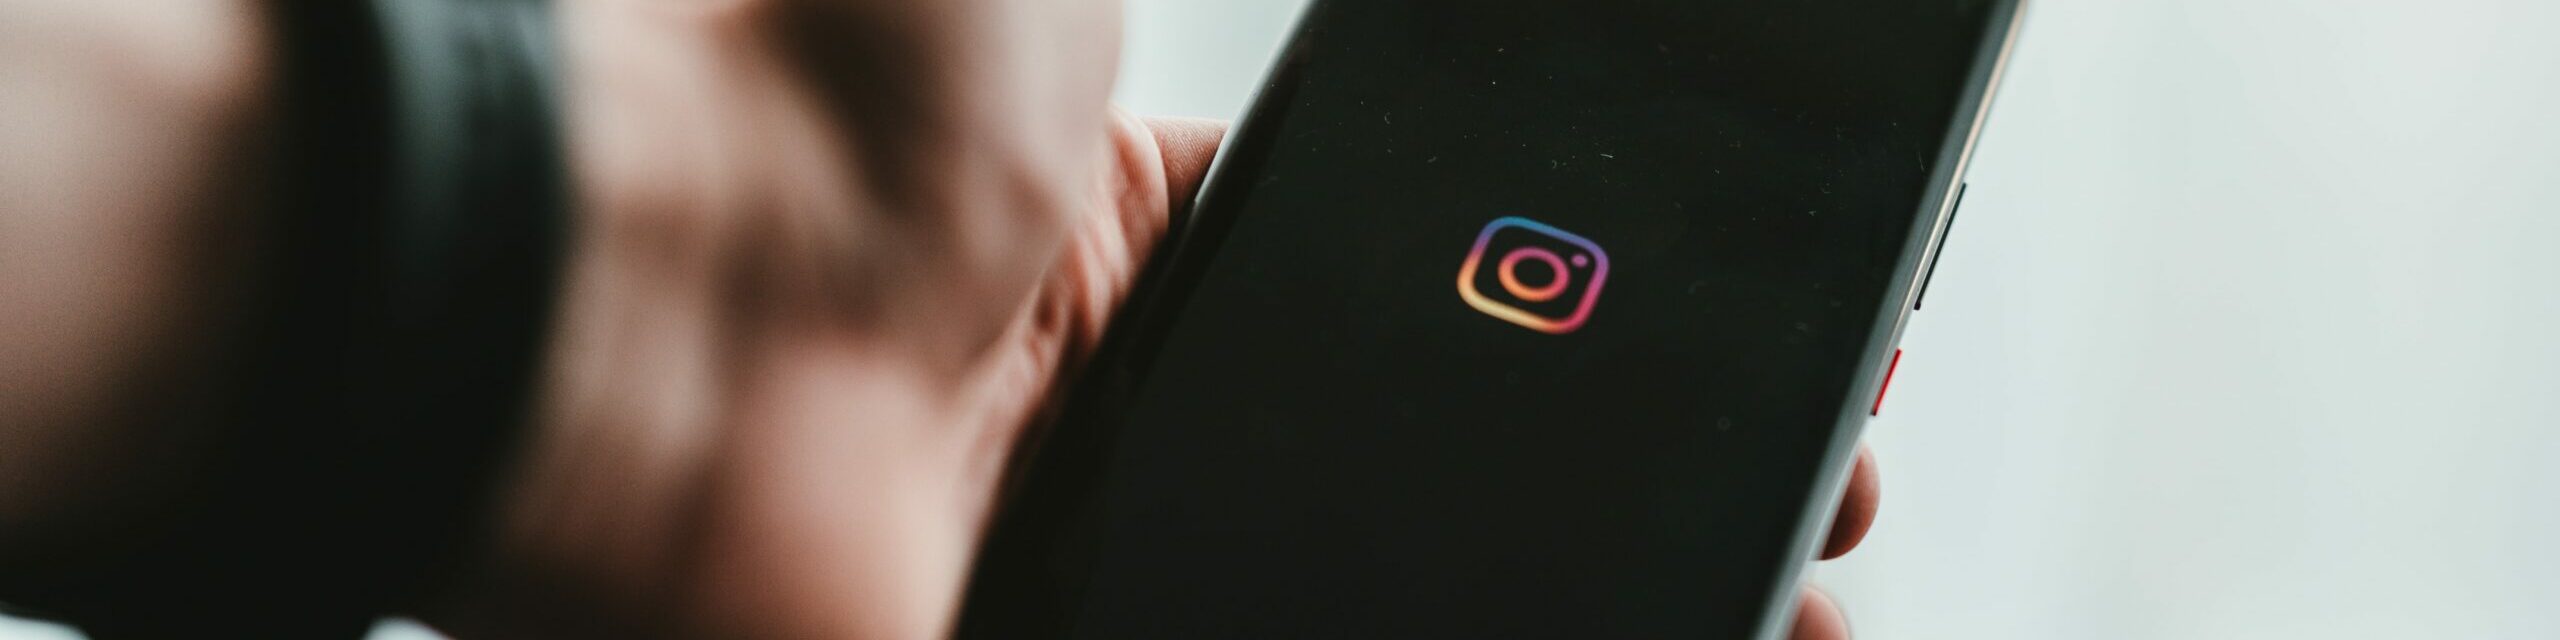 Pirater un compte Instagram, est-ce possible ?